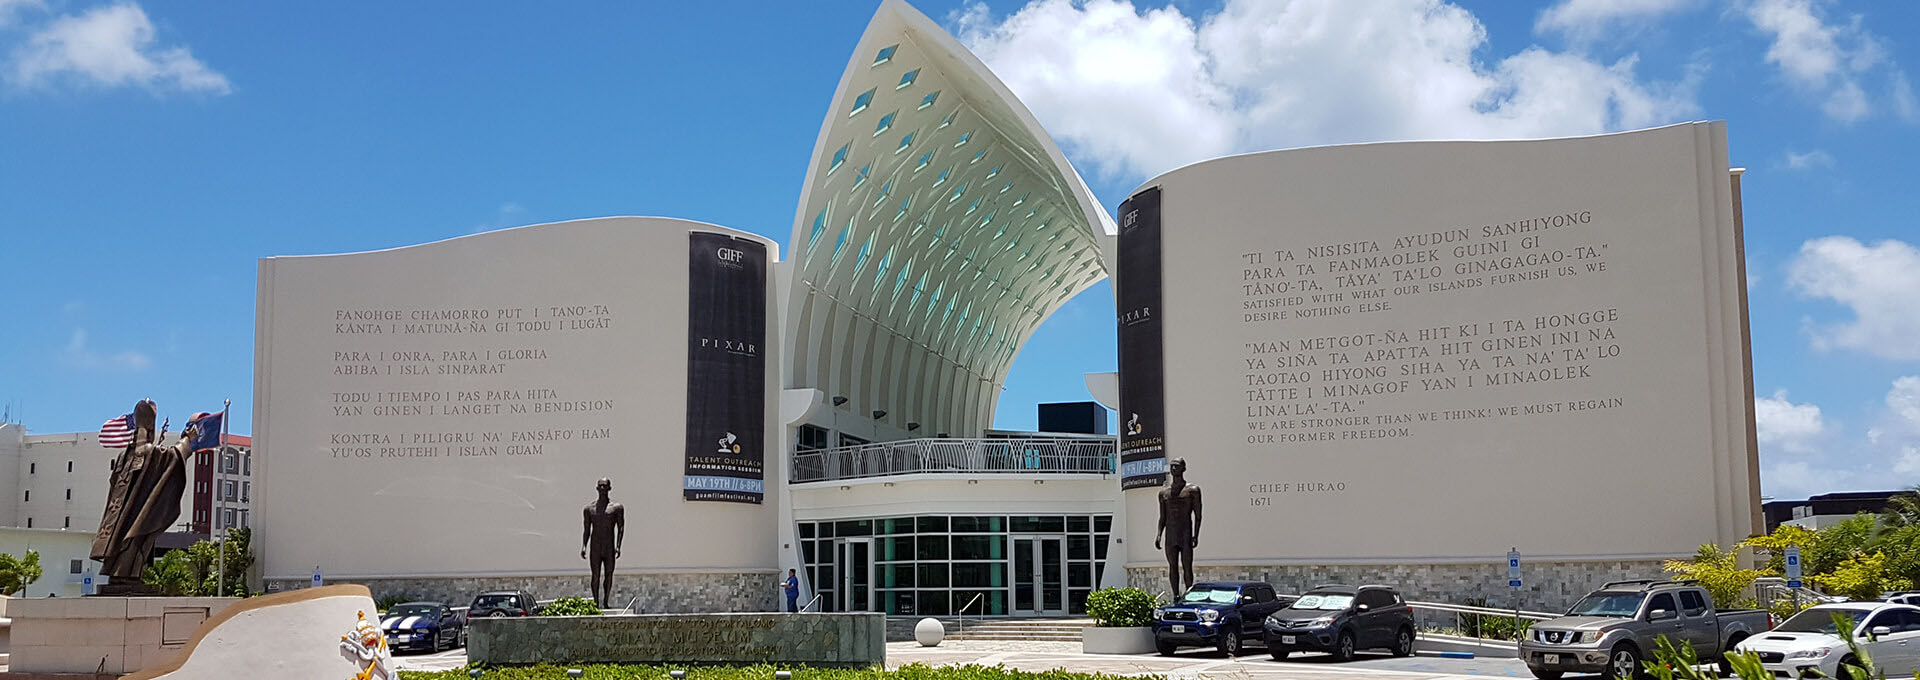 Guam Museum